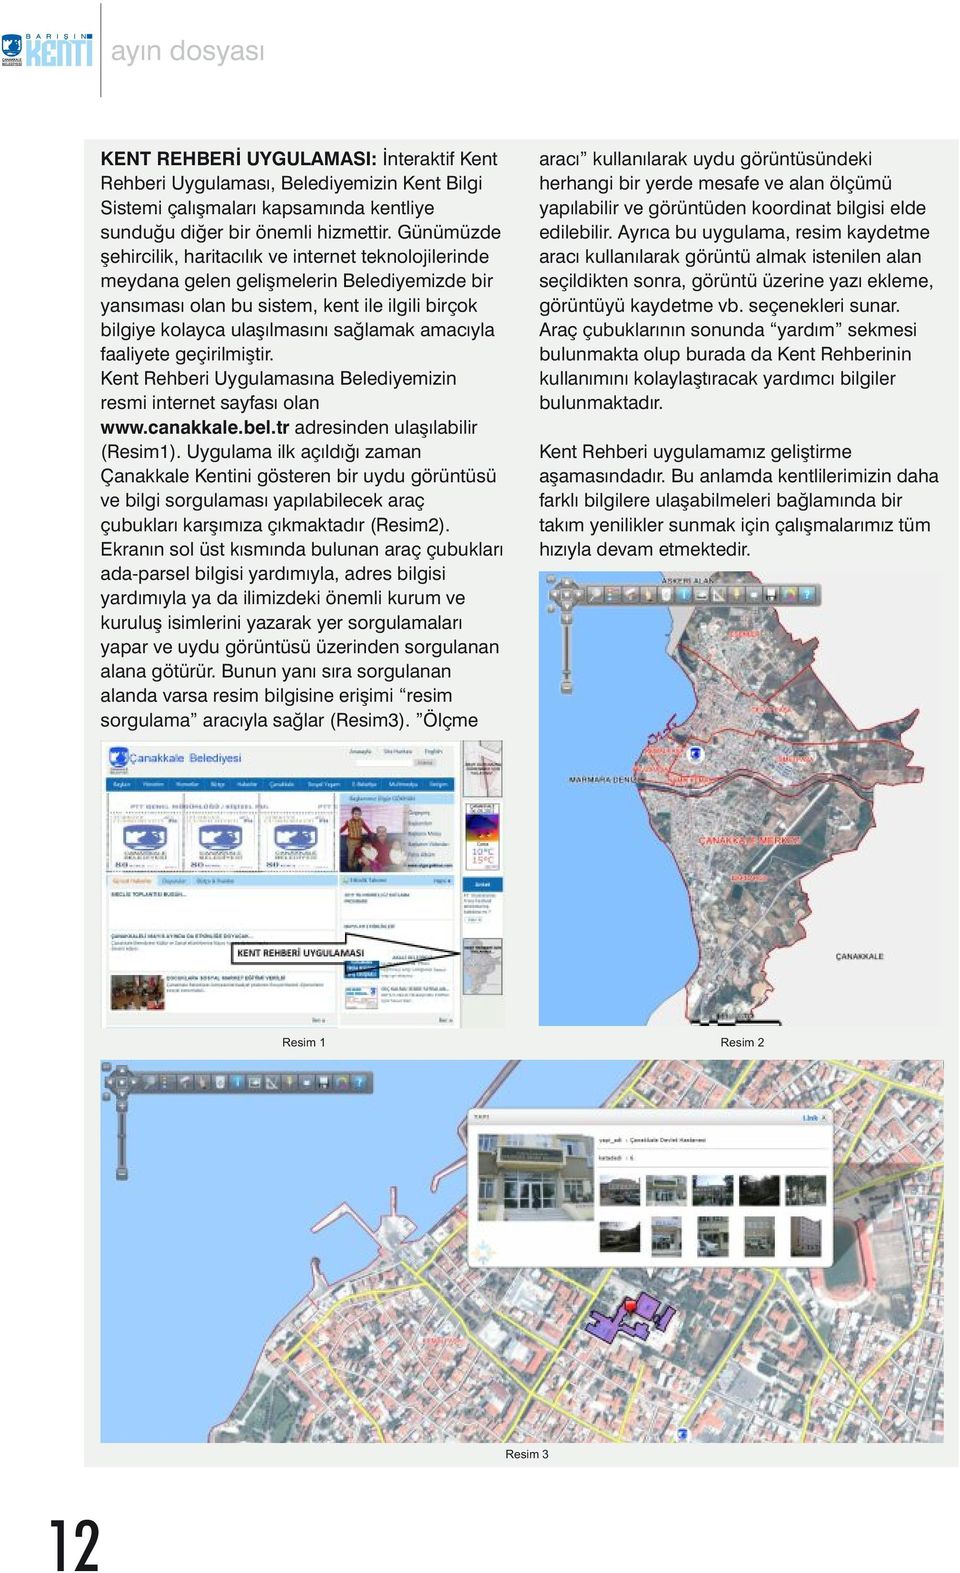 amacıyla faaliyete geçirilmiştir. Kent Rehberi Uygulamasına Belediyemizin resmi internet sayfası olan www.canakkale.bel.tr adresinden ulaşılabilir (Resim1).